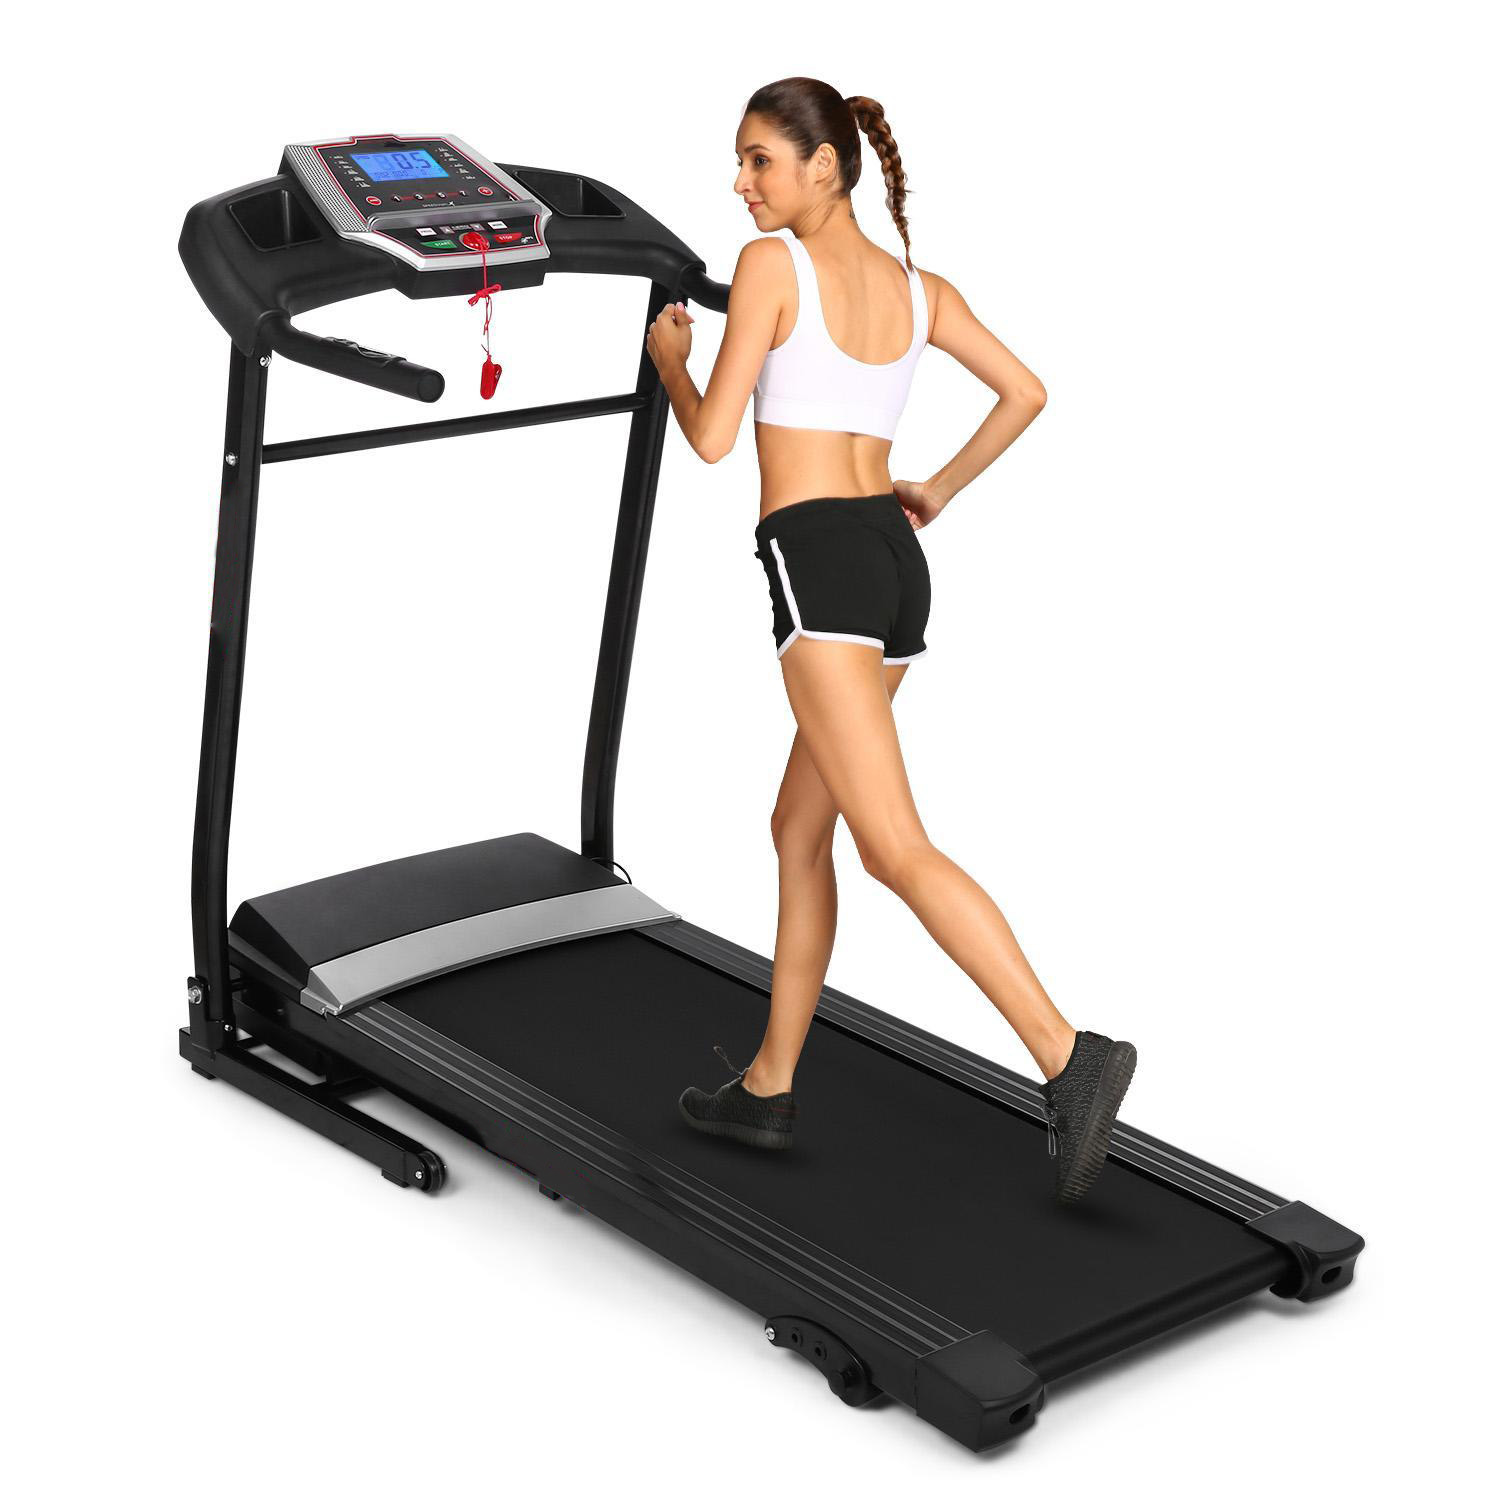 jogging on a treadmill